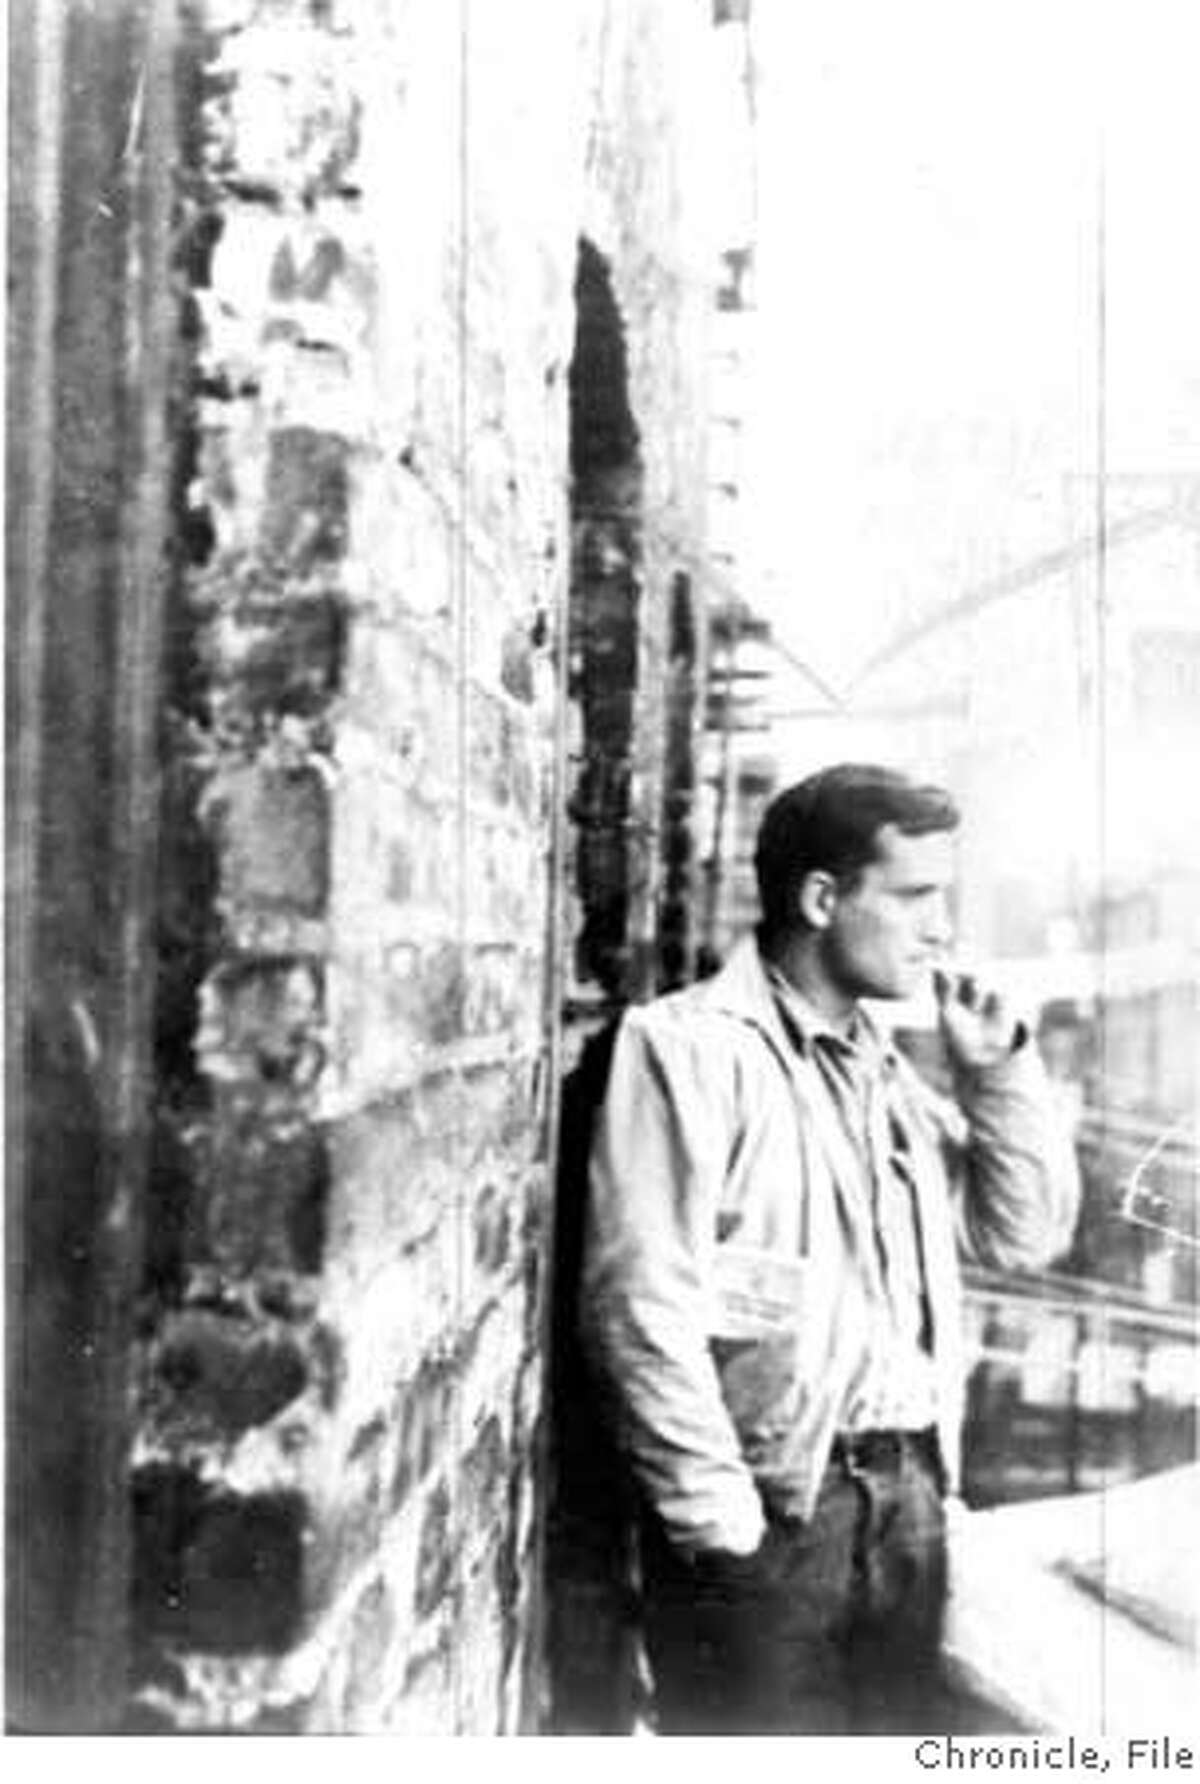 Undated Chronicle file photo of Jack Kerouac